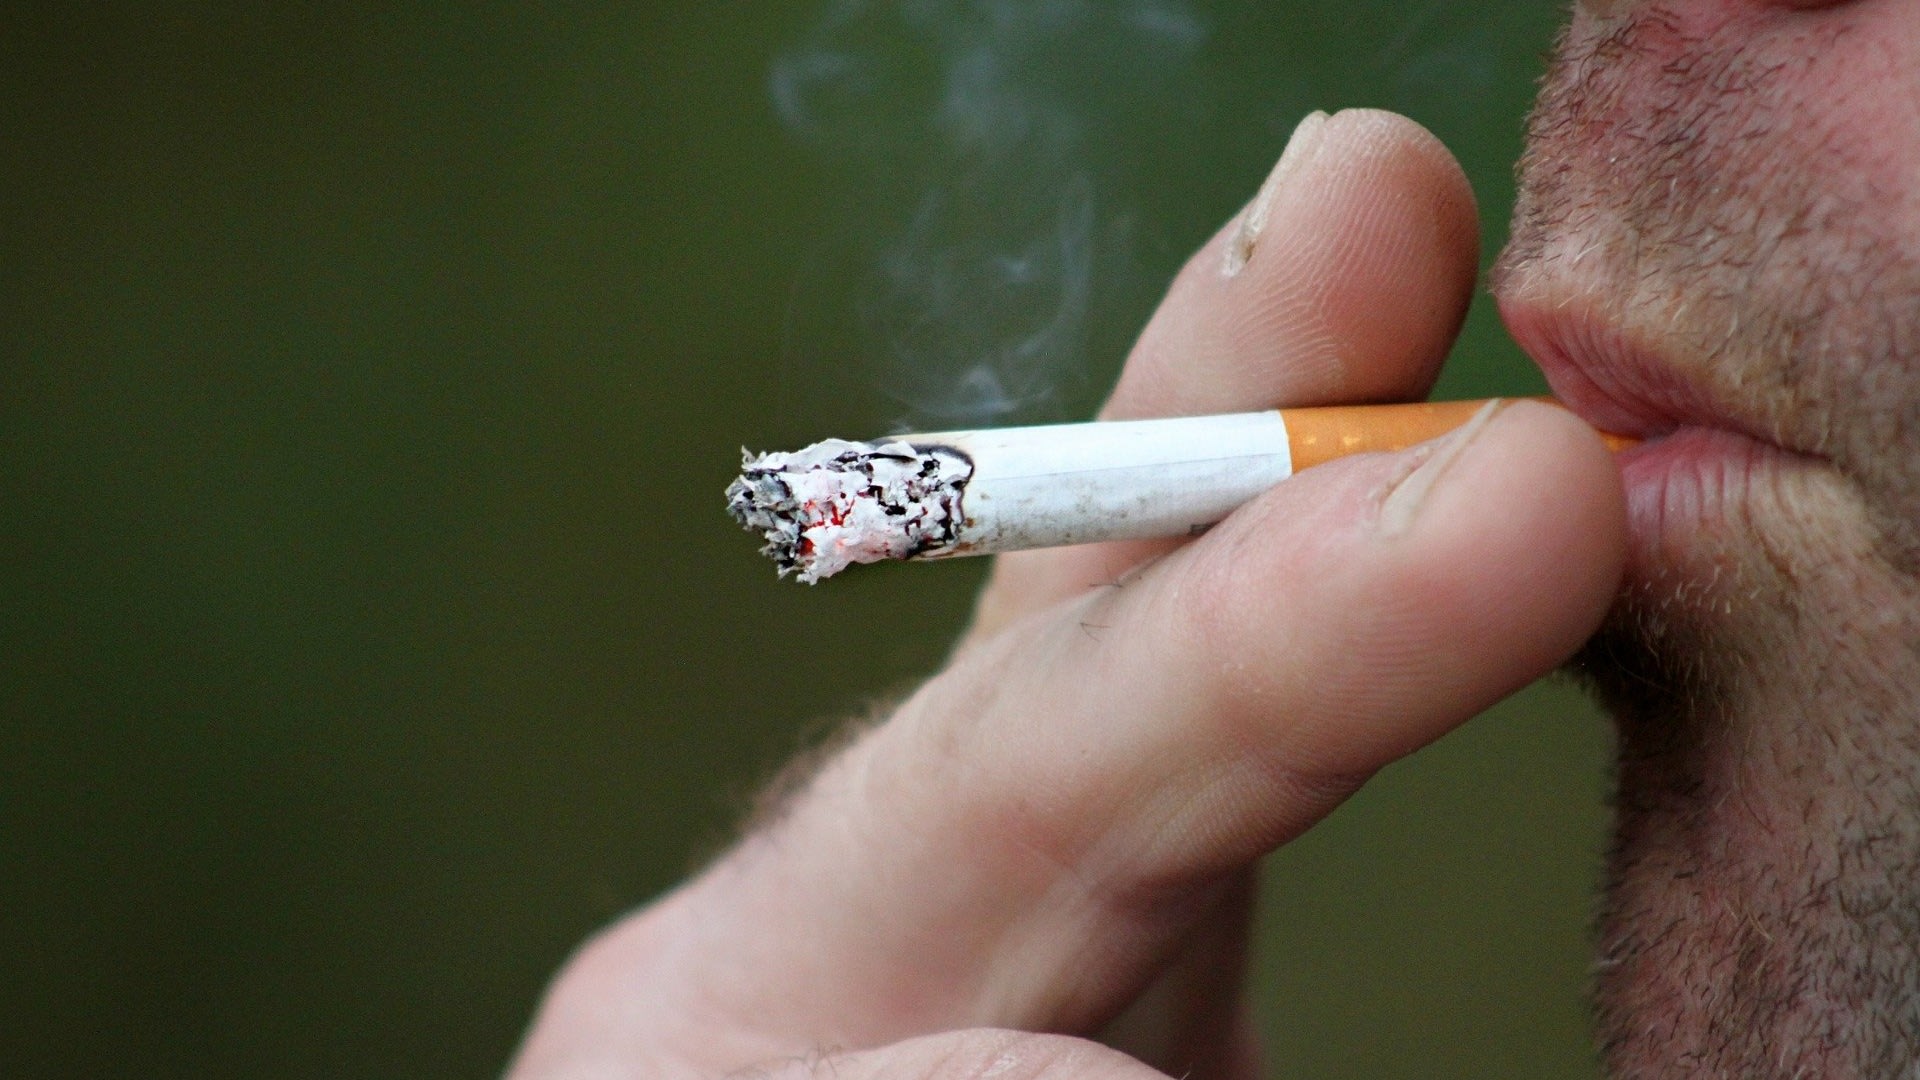 Een op de vier rokers houdt stoppoging geheim uit angst voor falen